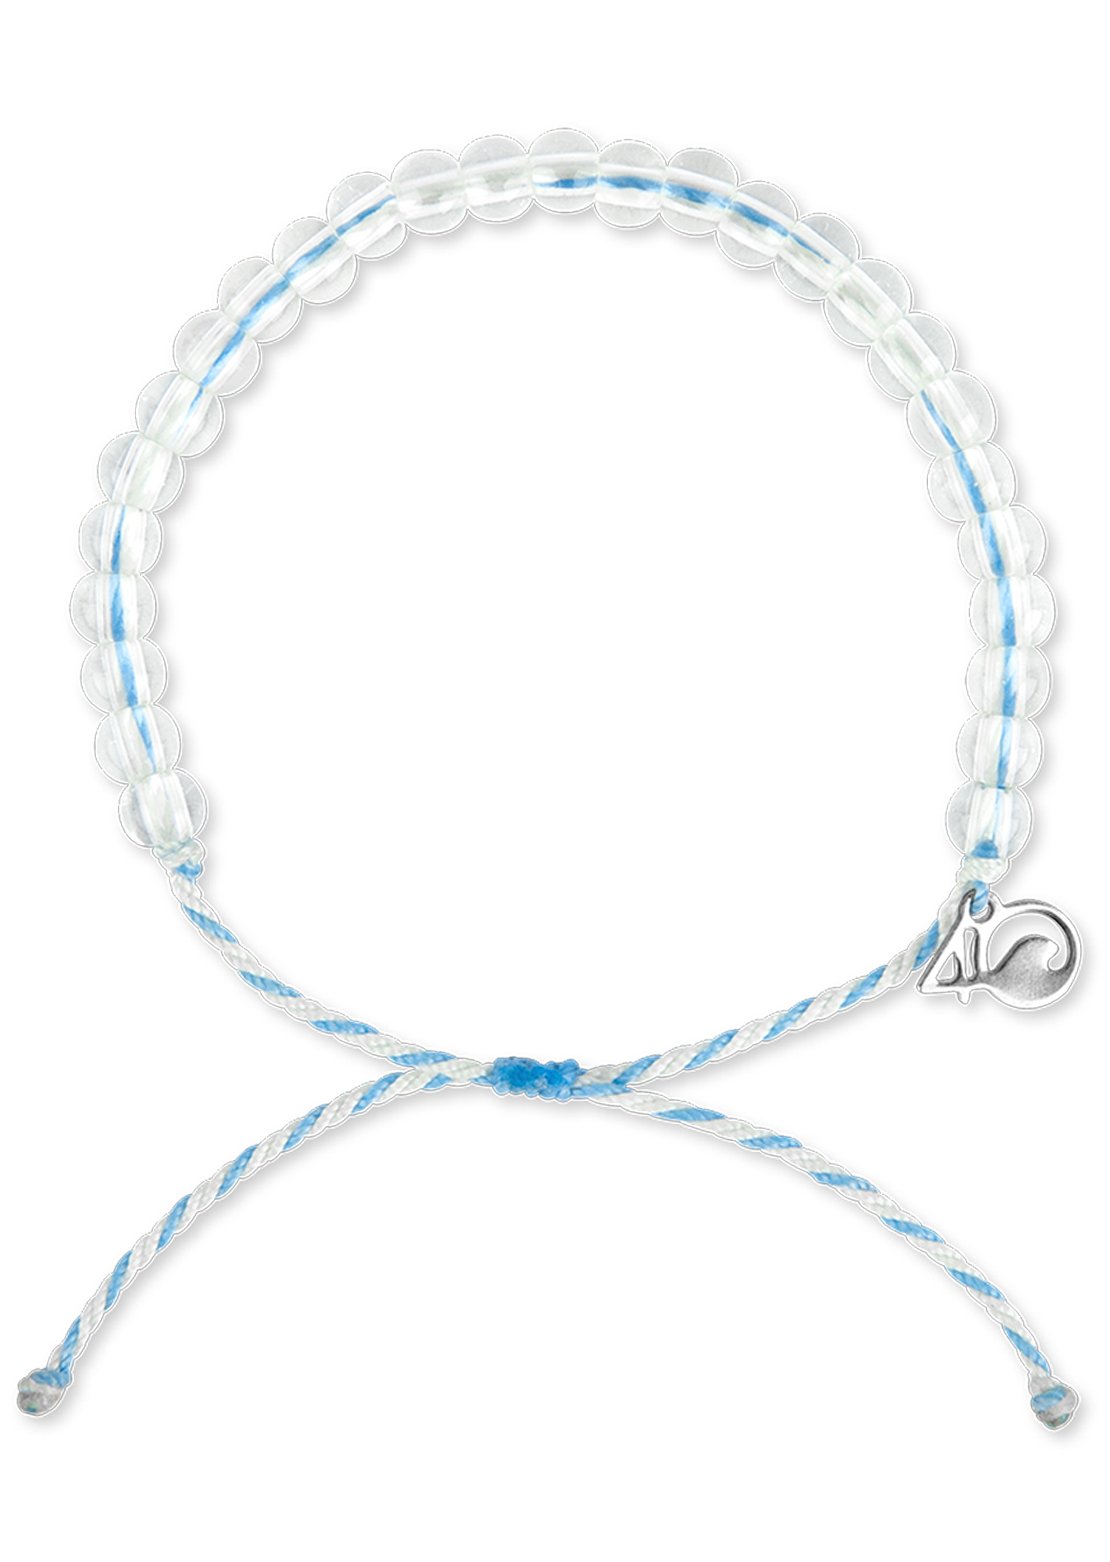 4OCEAN Beluga Whale Bracelet White/Light Blue